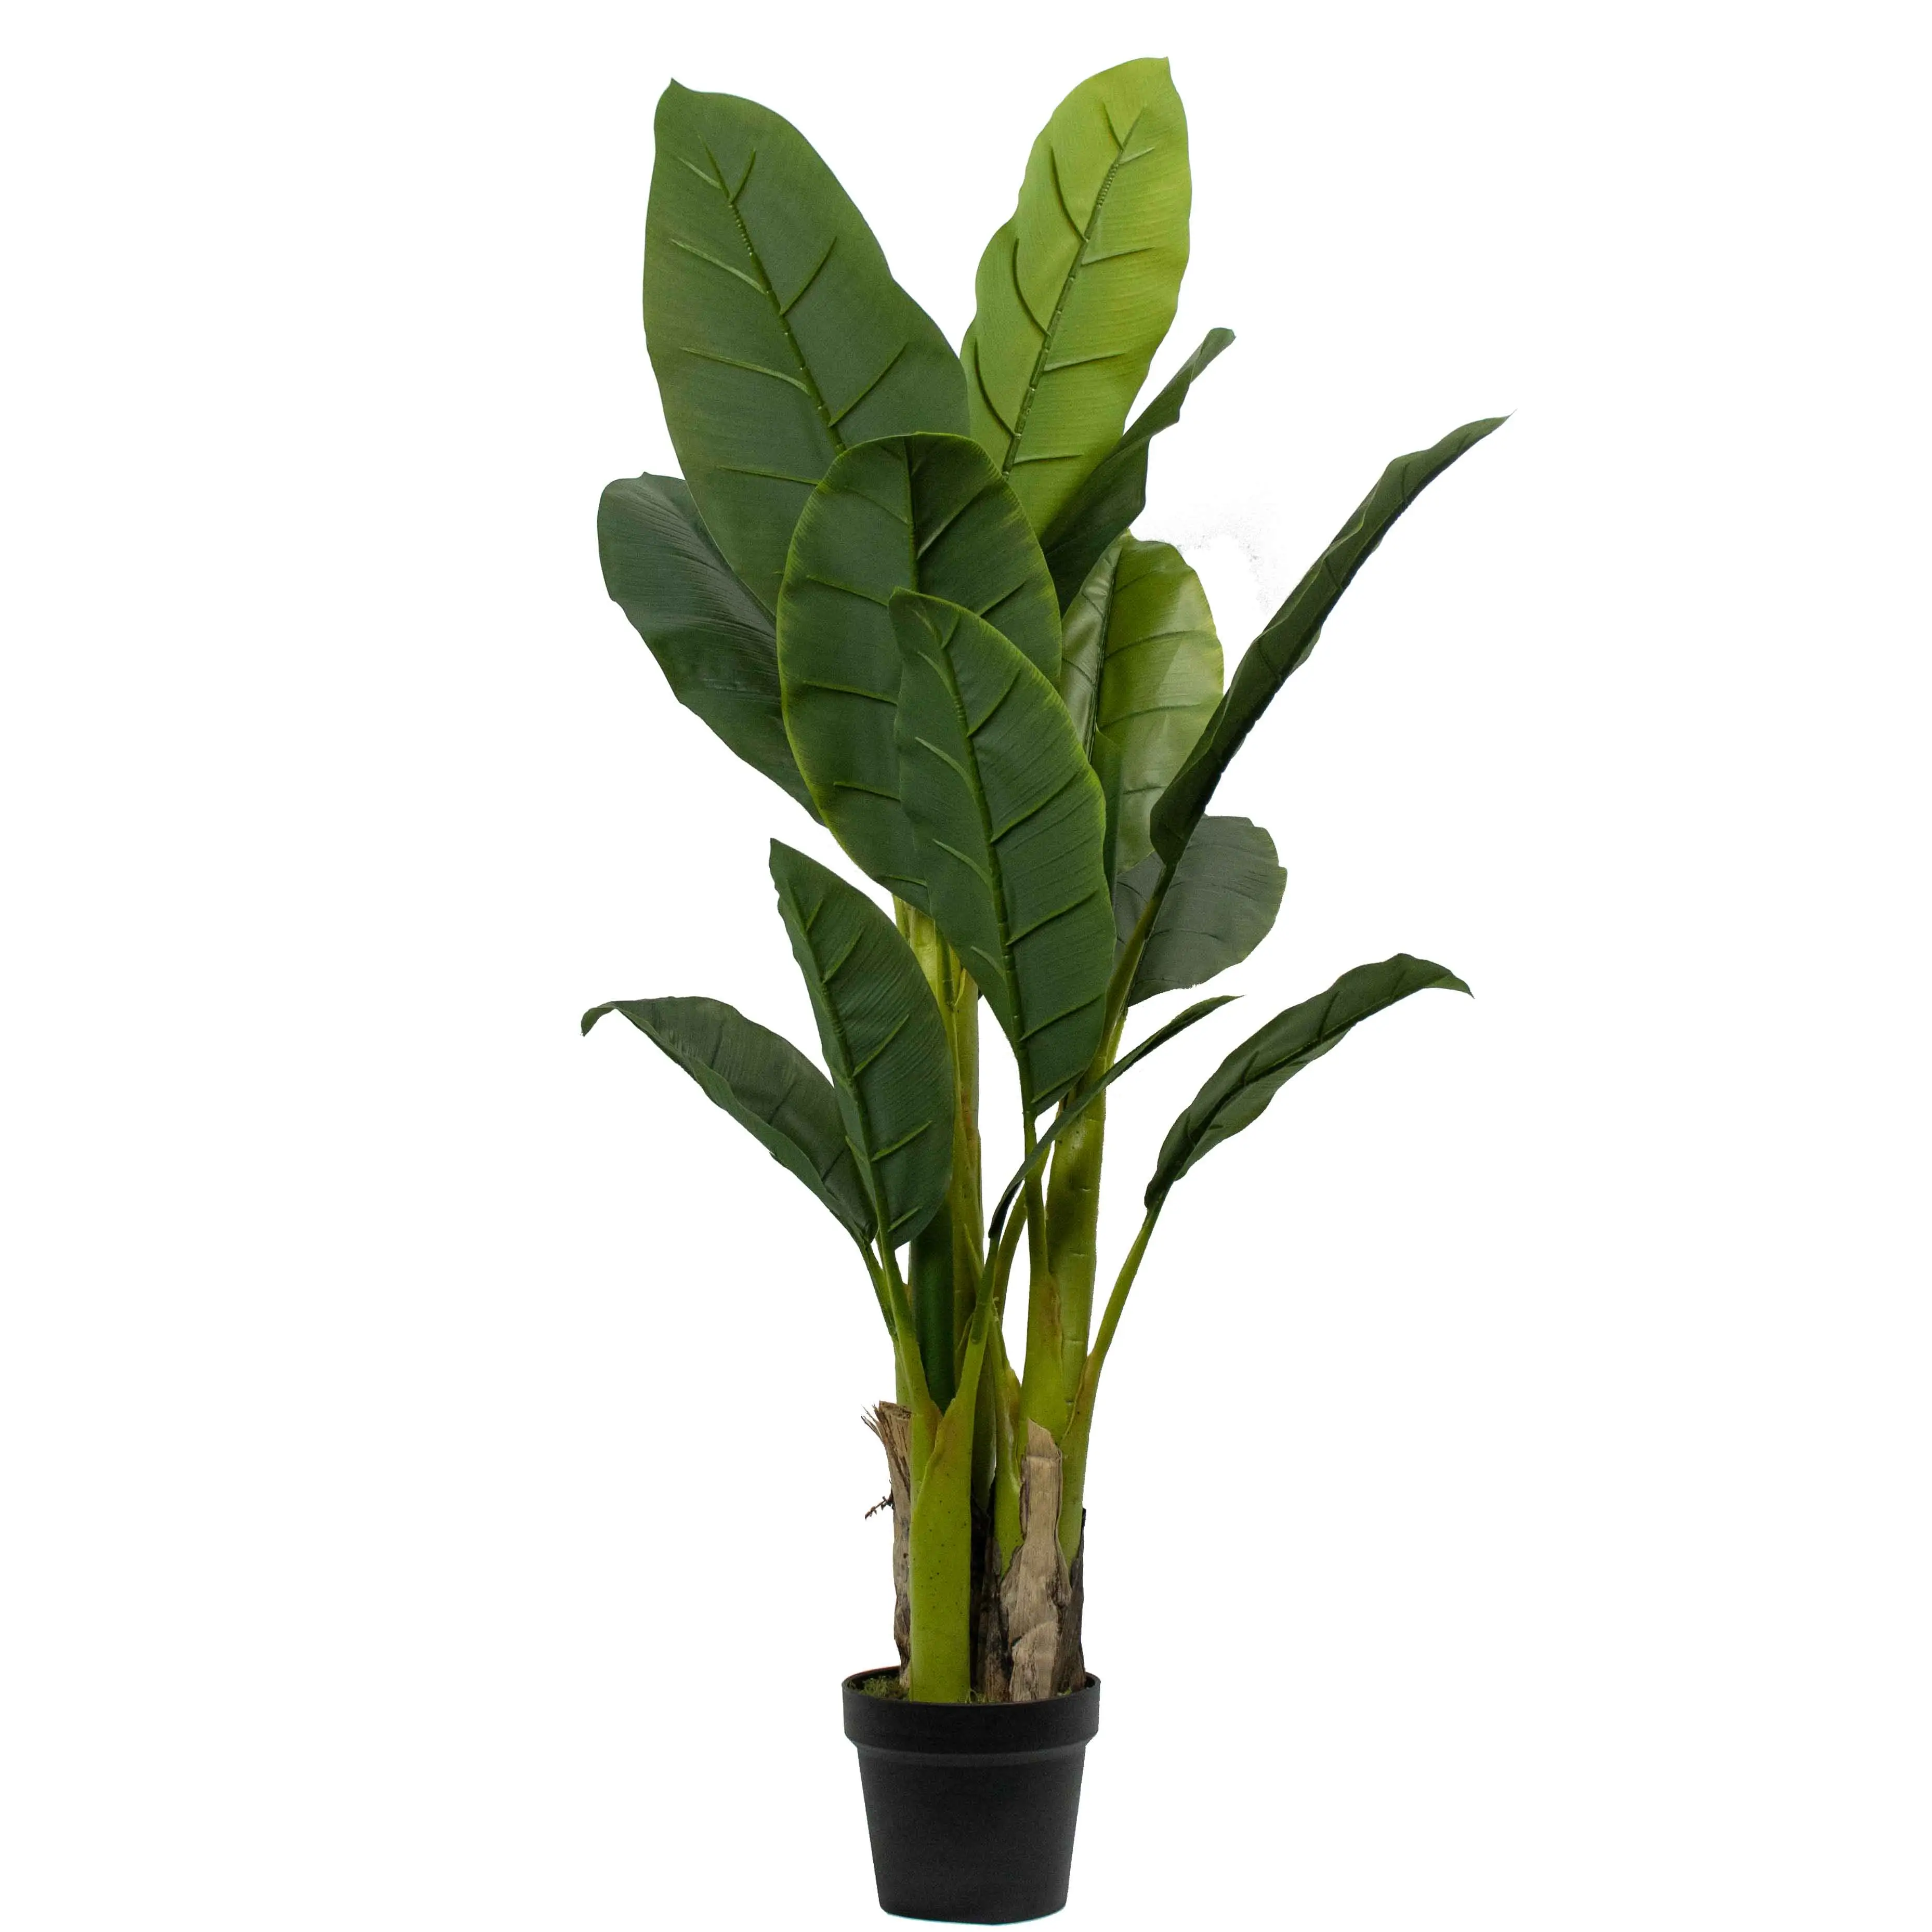 Plásticos simulados de 130cm, 18 hojas, plantas, decoración de jardín ornamental inodoro, plátano artificial realista, árbol de plátano Musa basjoo